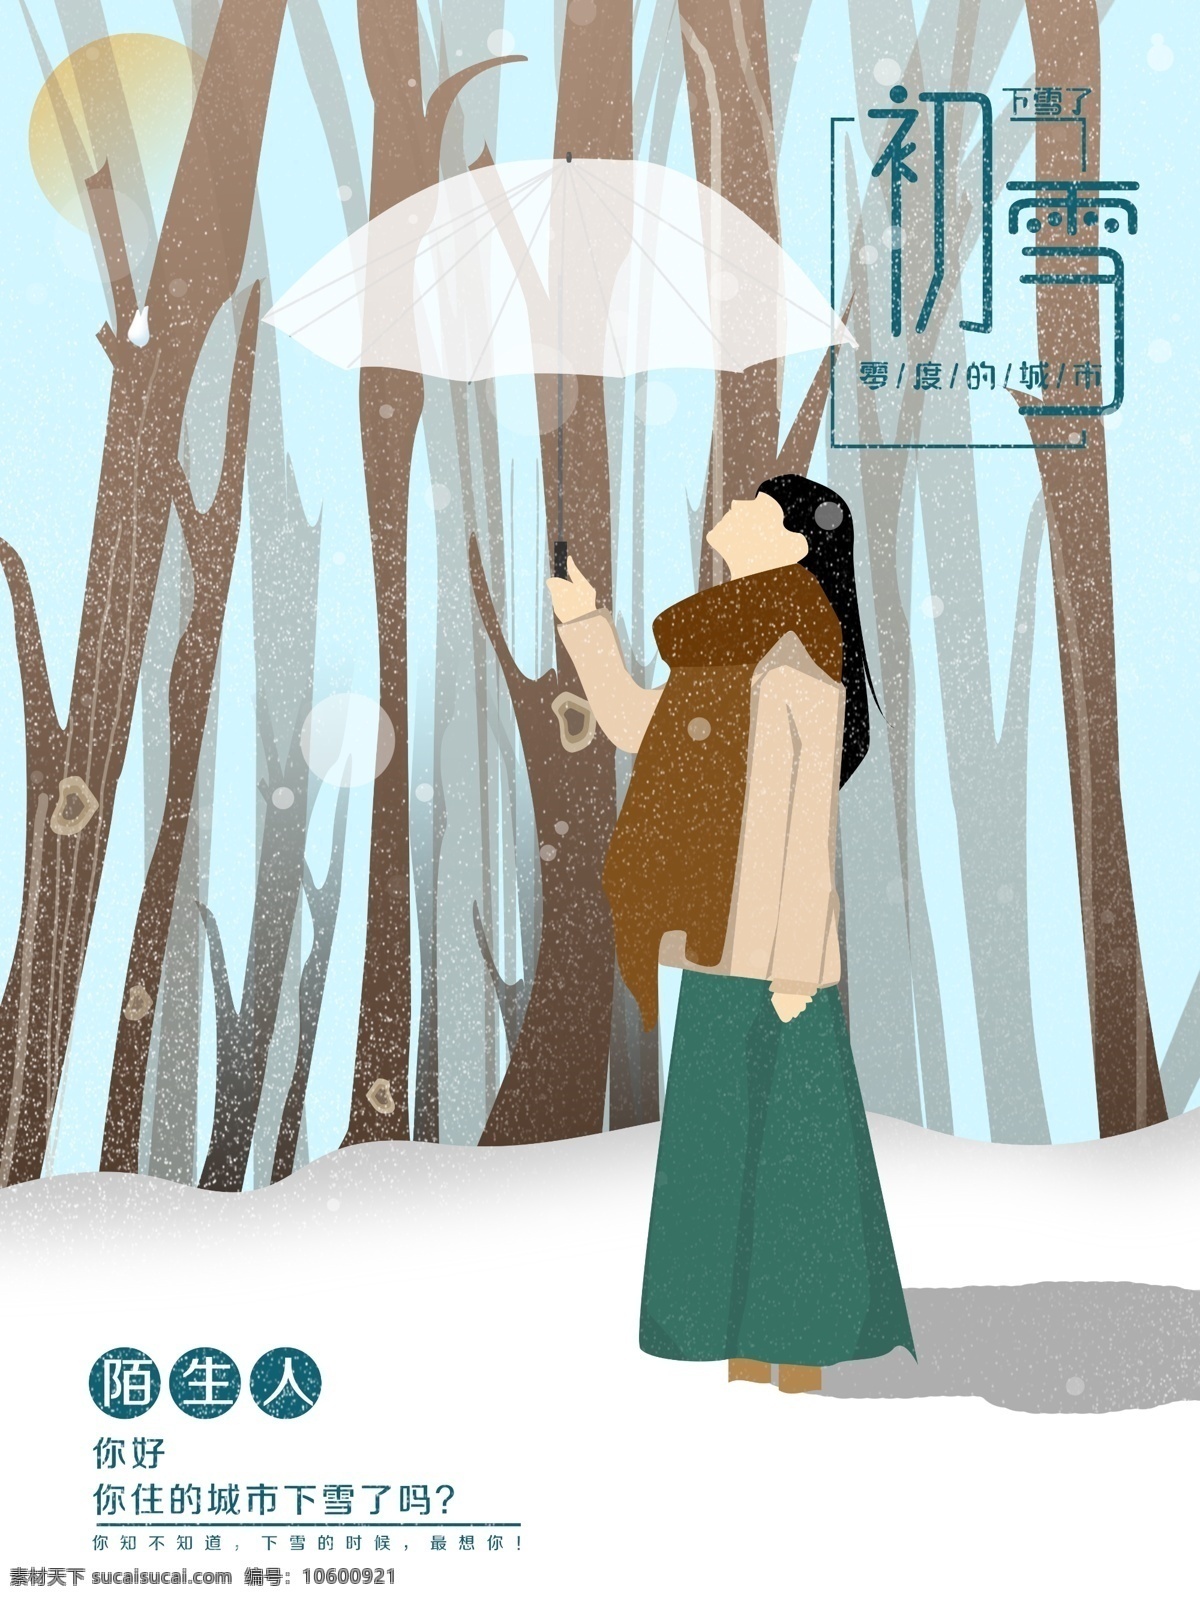 原创 插画 初雪 冰冻 第一场雪 风 寒风 寒冷 女孩 树林 唯美 下雪 雪地 雪花